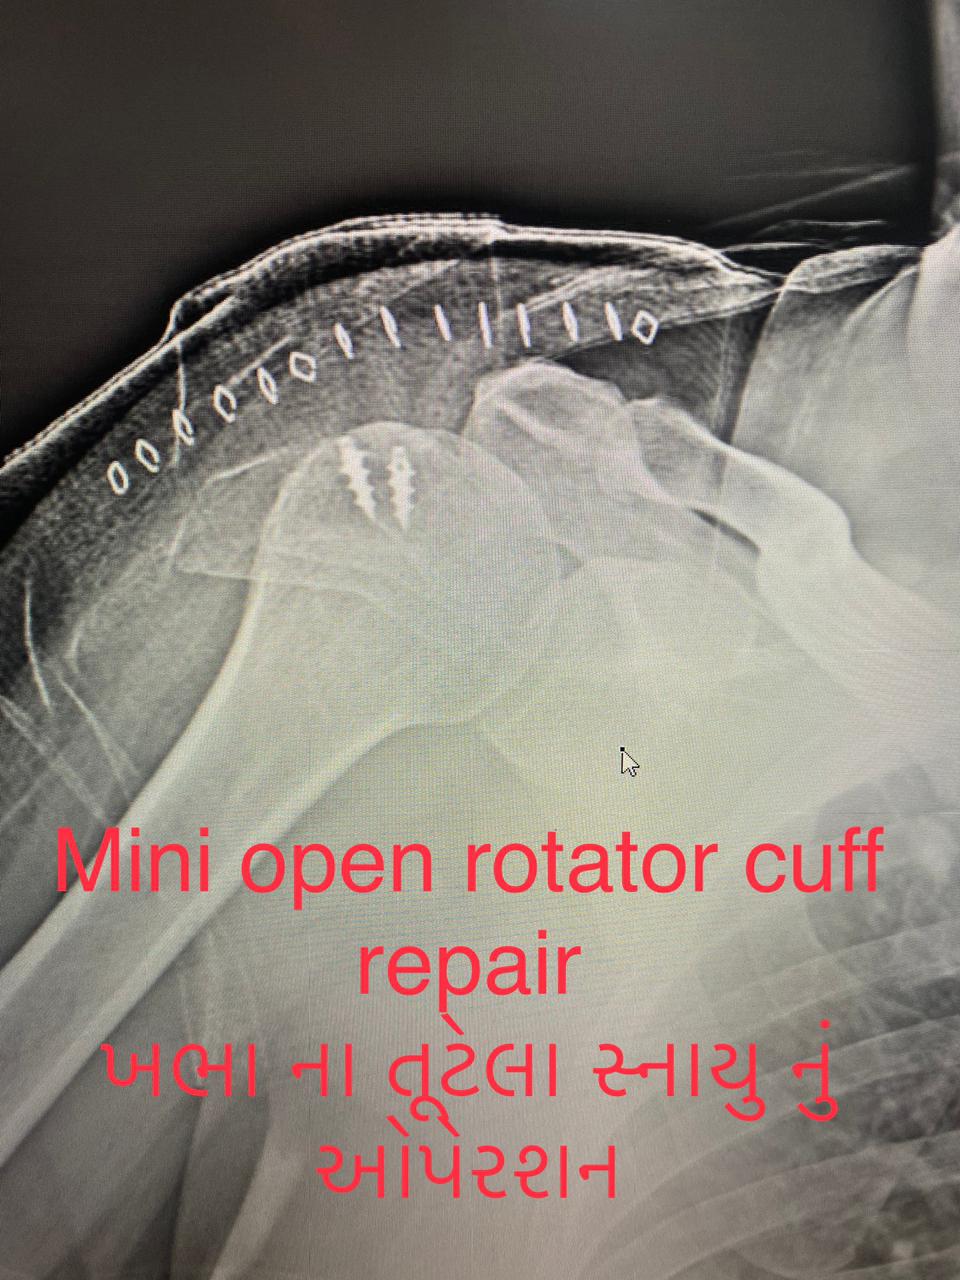 rotator cuff arthroscopy